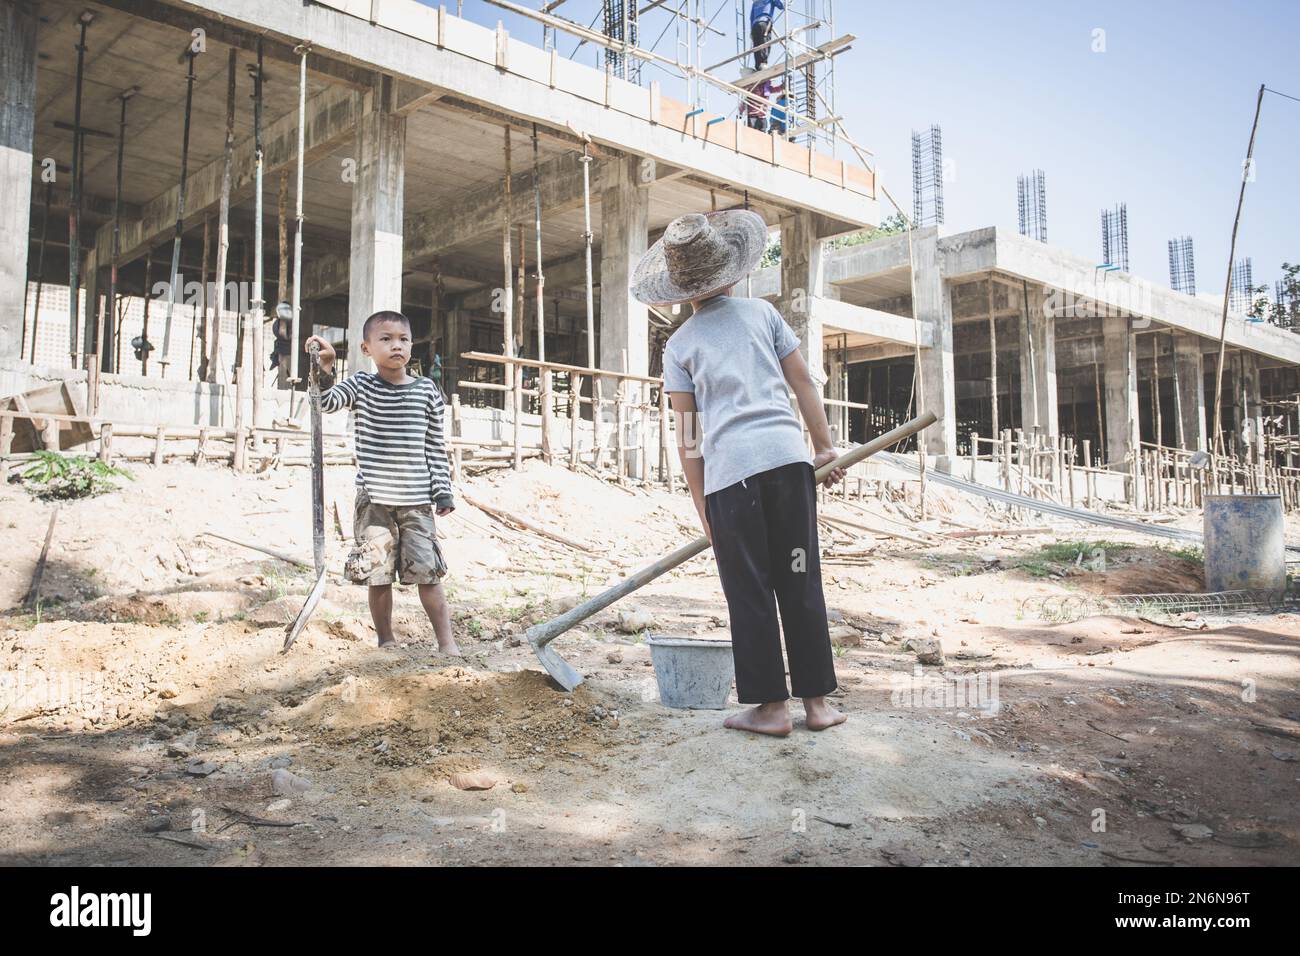 Kinder, die hart auf der Baustelle arbeiten, Kinderarbeit, Welttag gegen Kinderarbeit Konzept. Stockfoto